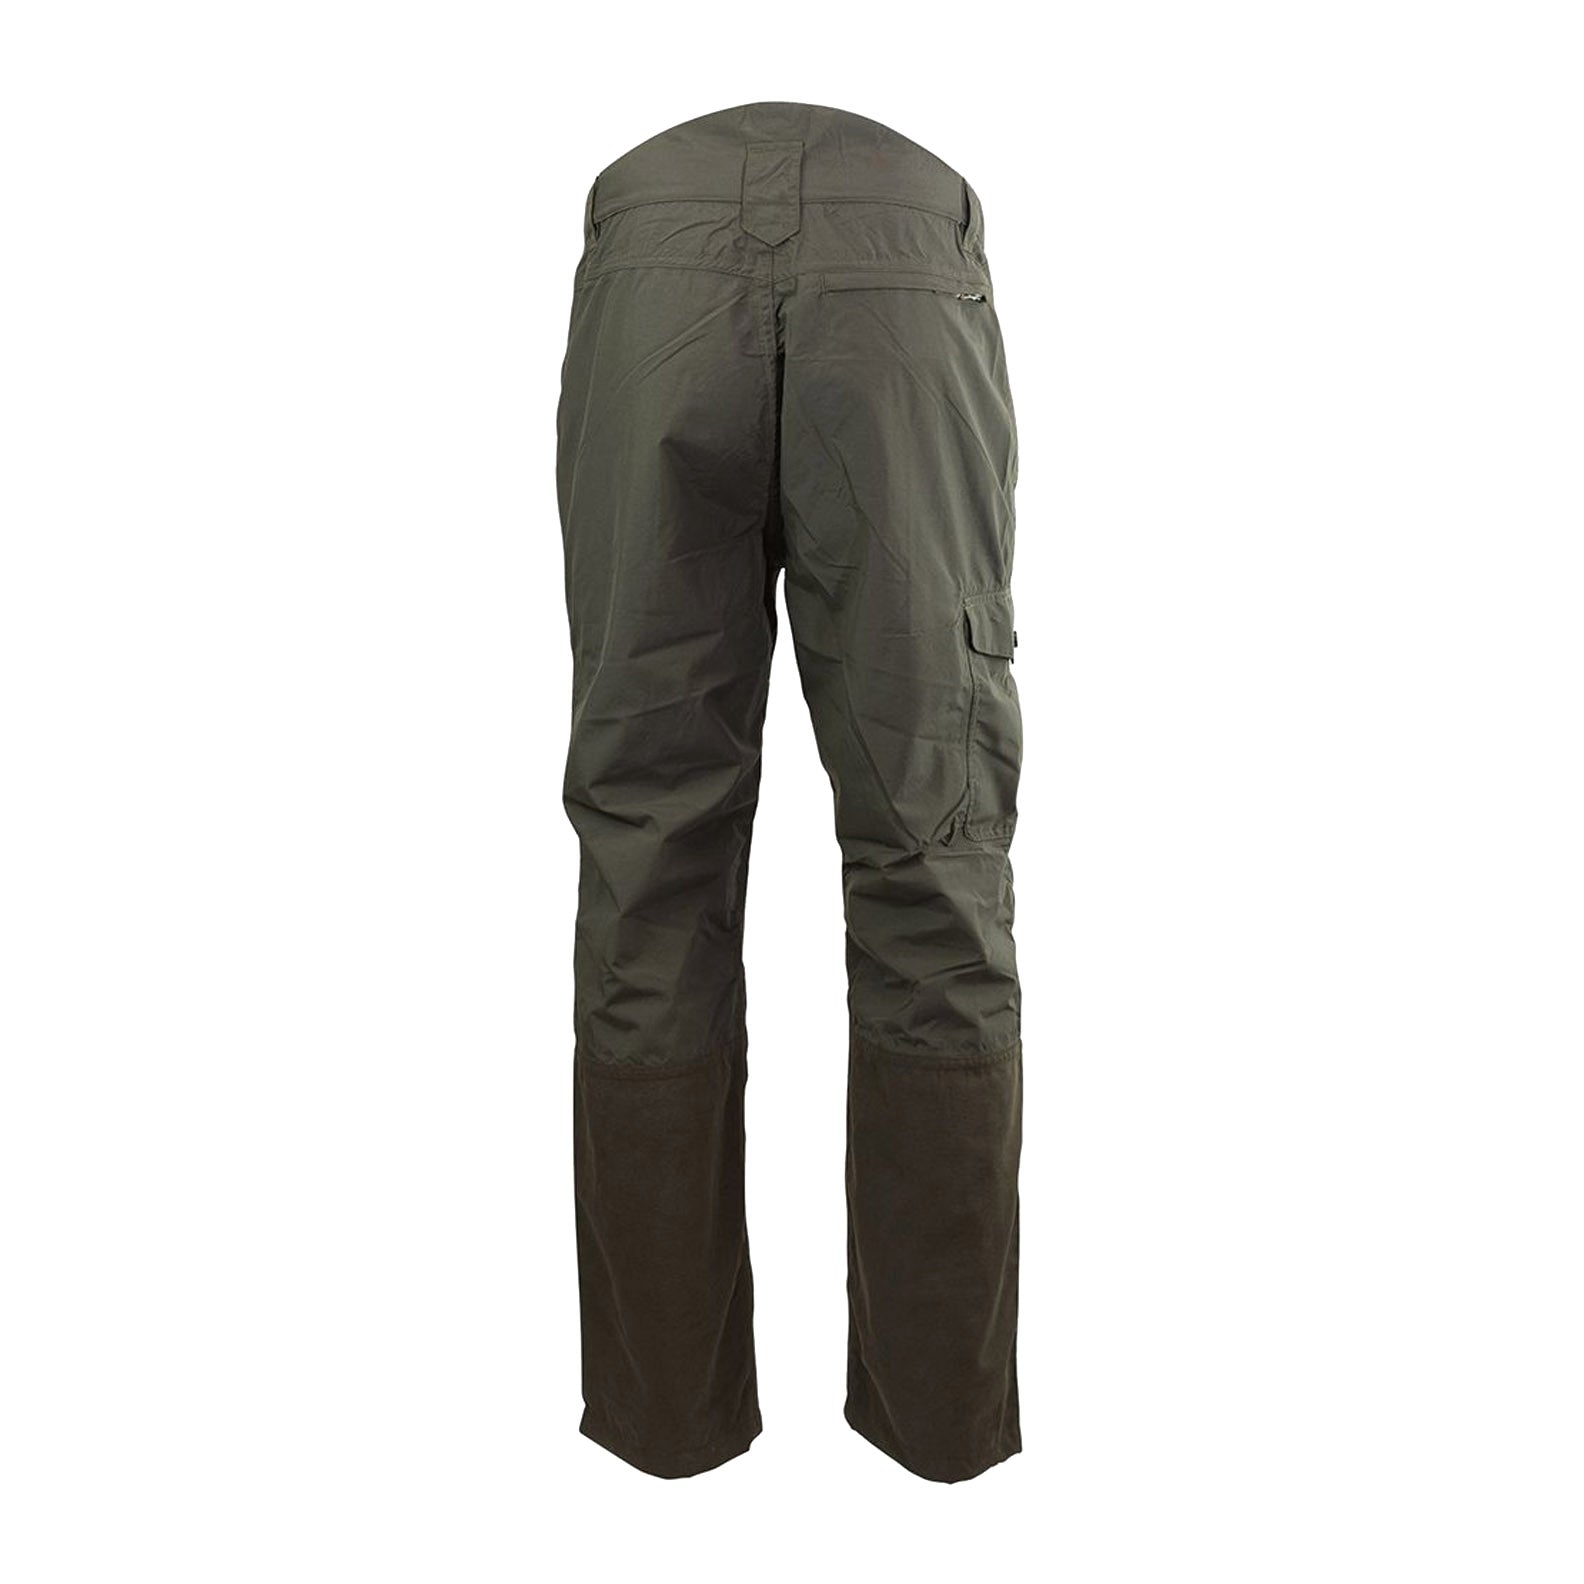 OCEAN camouflage waterproof trousers  Hunters rain pants for MEN  WOMEN